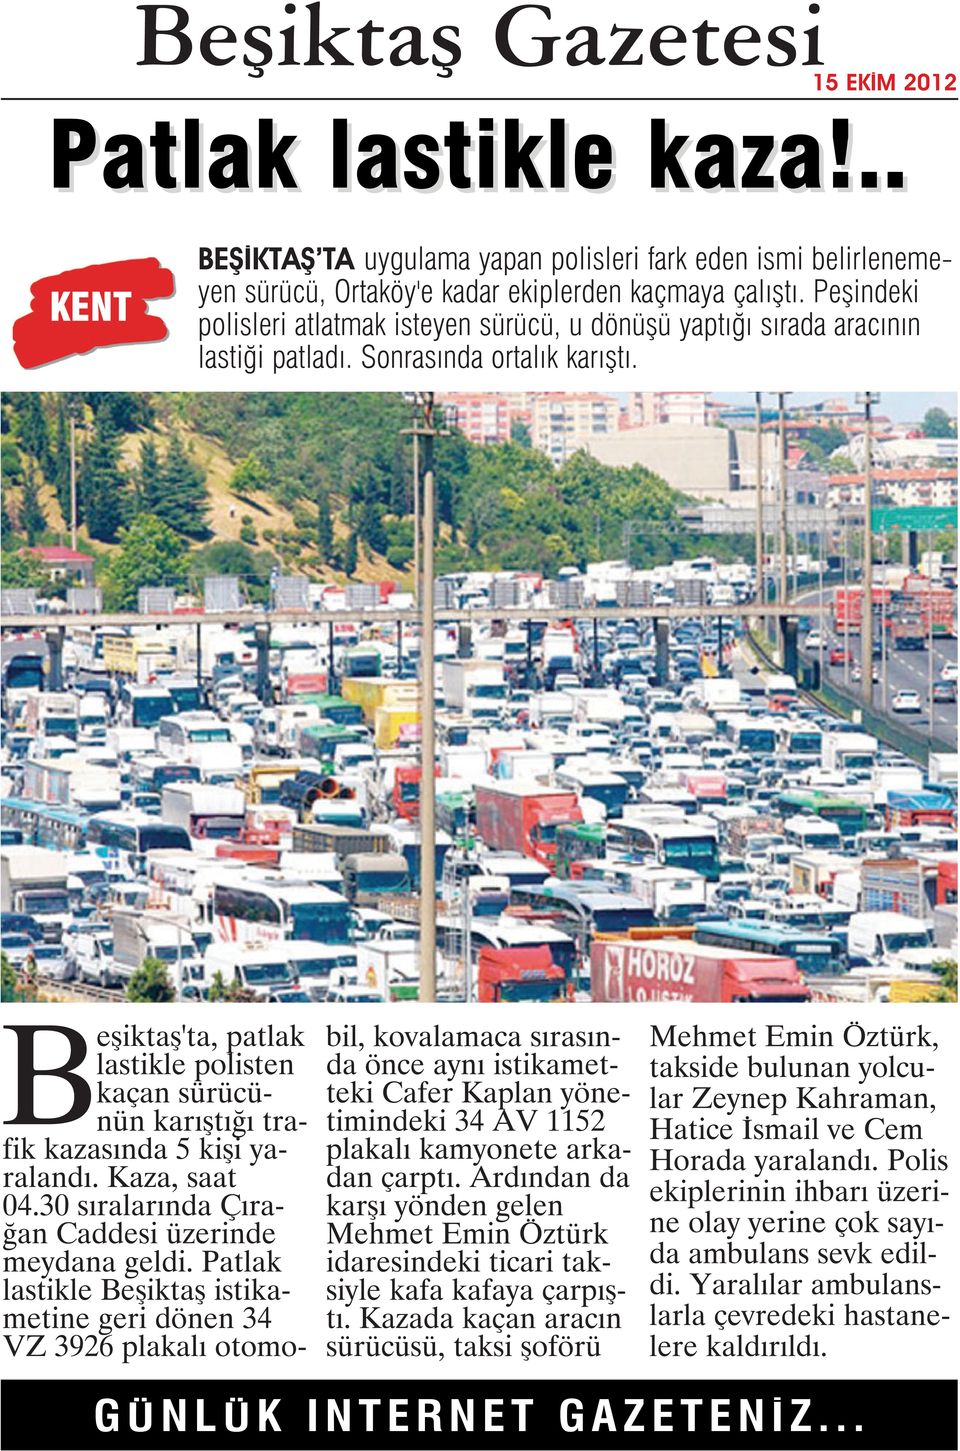 Beşiktaş'ta, patlak lastikle polisten kaçan sürücünün karıştığı trafik kazasında 5 kişi yaralandı. Kaza, saat 04.30 sıralarında Çırağan Caddesi üzerinde meydana geldi.